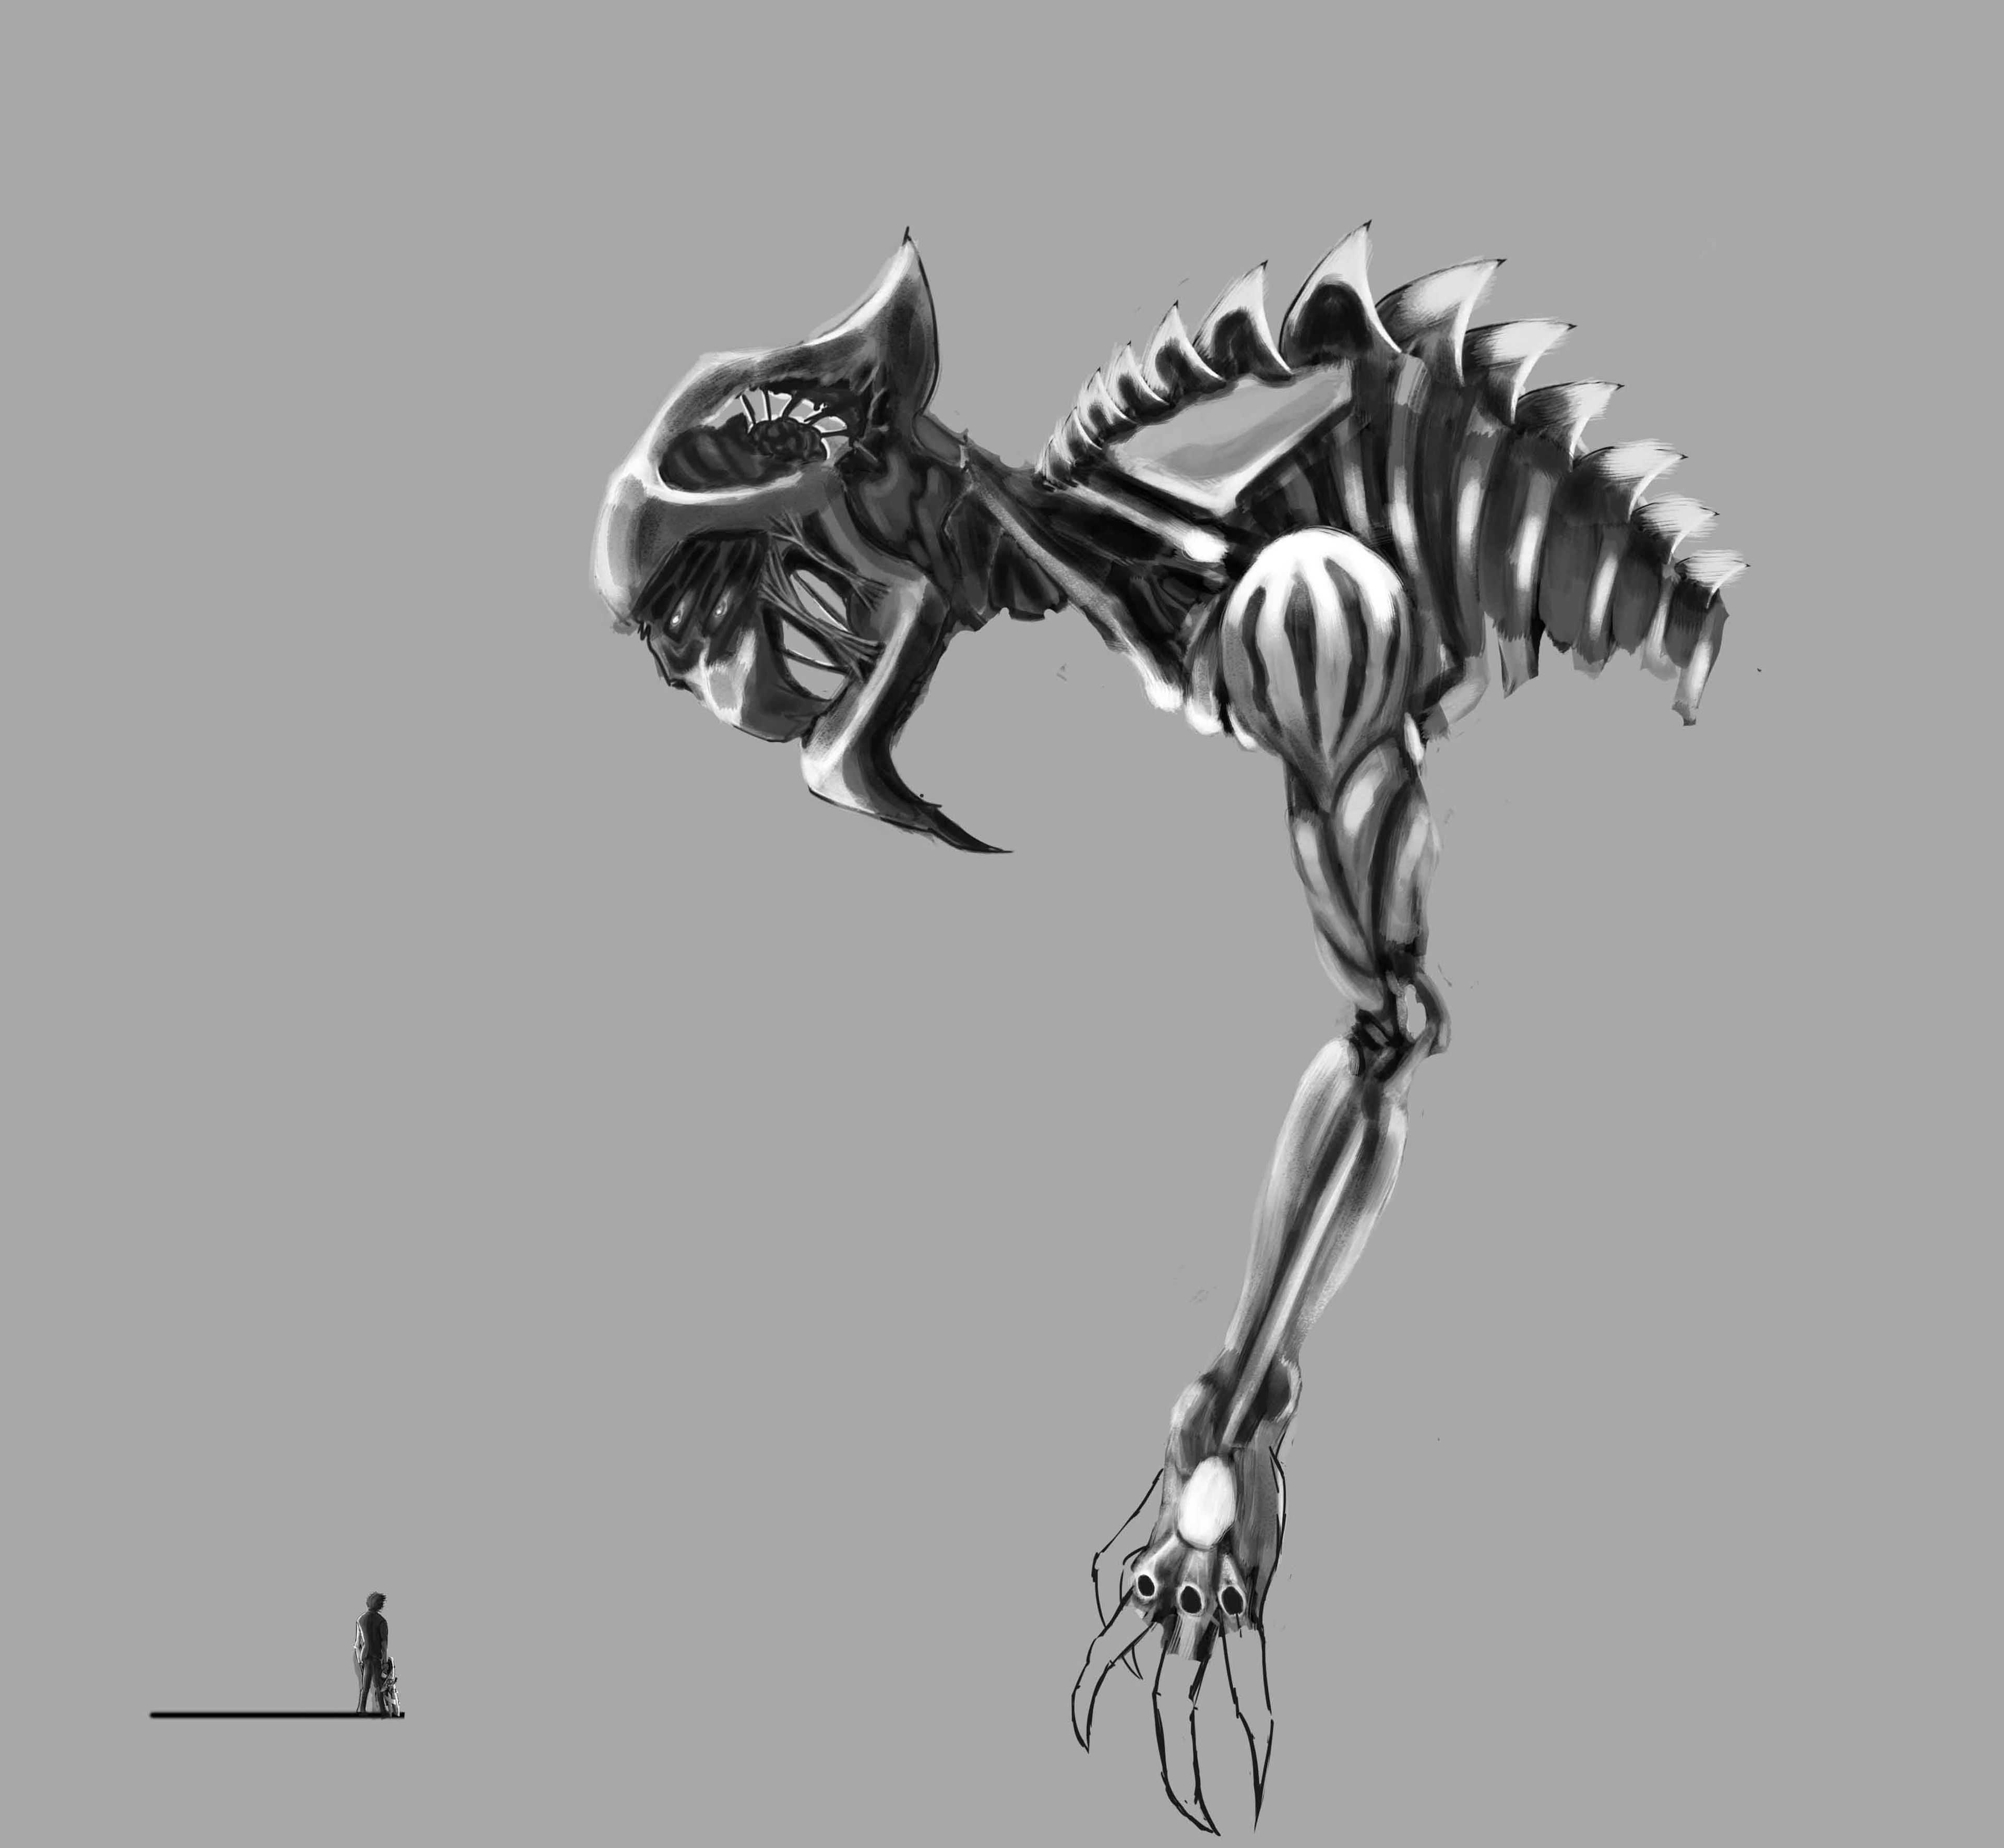 El boceto del enemigo final, Yomu, da una idea aproximada de sus gigantescas proporciones.